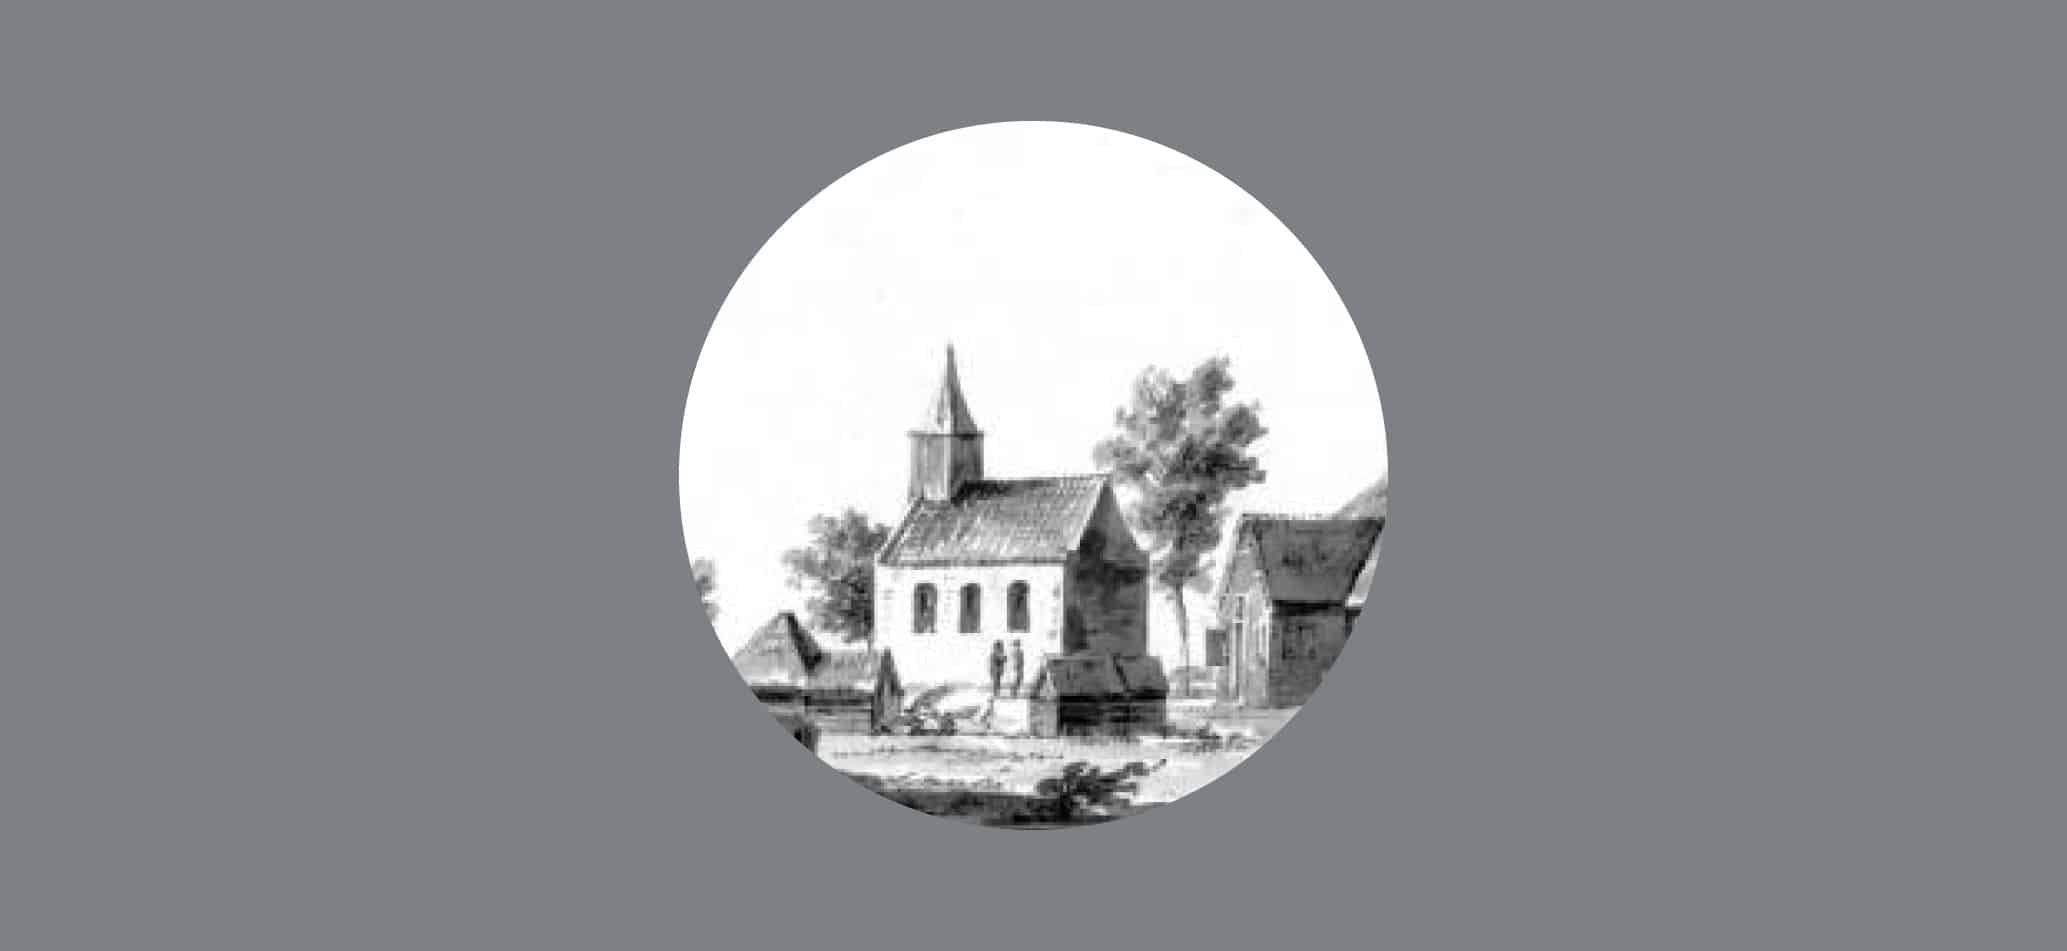 79-Kapel in de Mijzen, Schermerhorn, Cornelis Pronk-foto-Noord-Hollands Archief